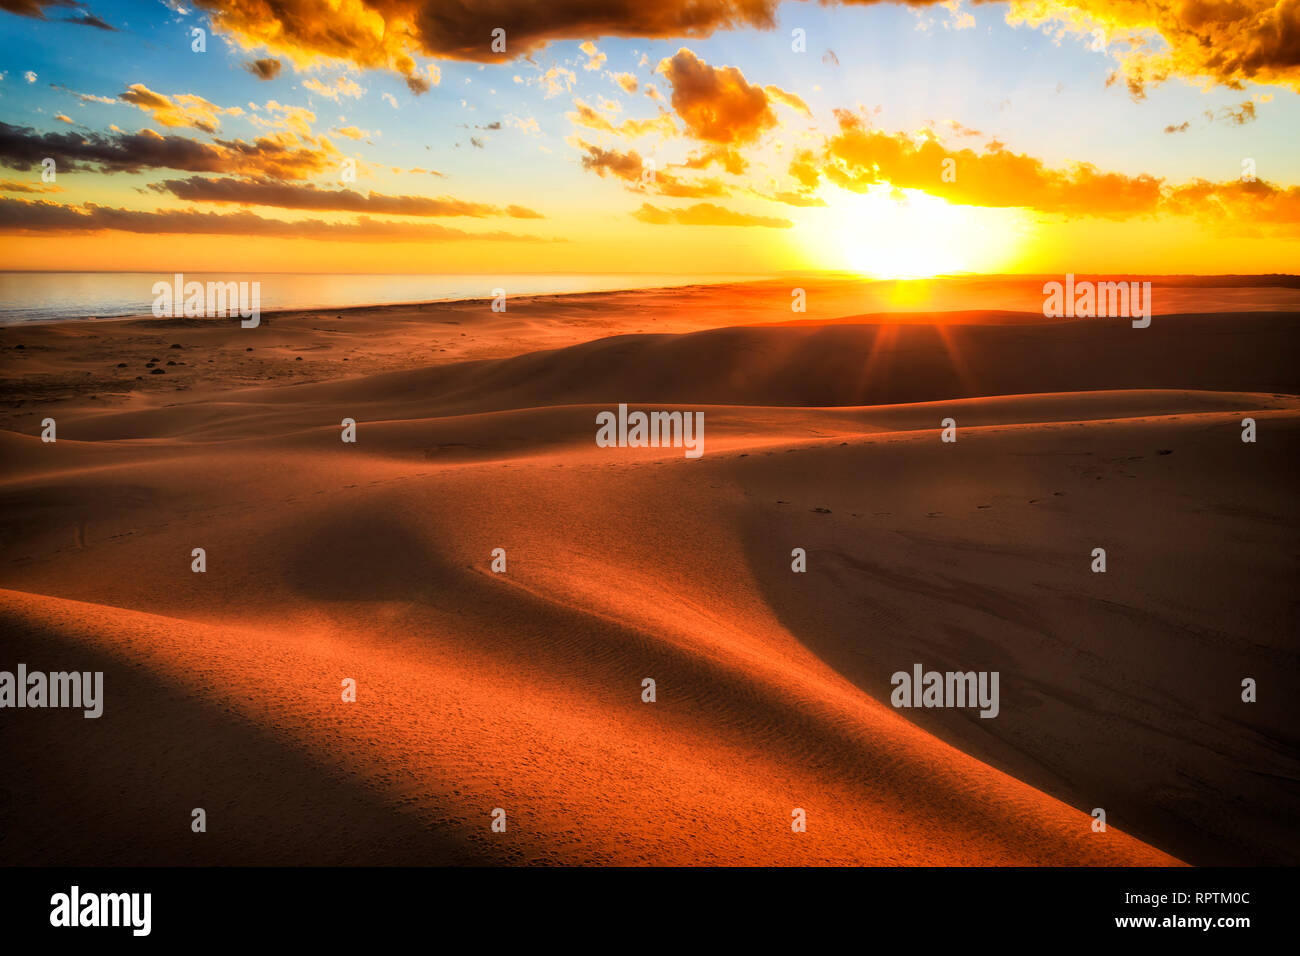 Strahlen der Sonne über Horizont bei Sonnenuntergang in den trockenen Wüste Sand Dünen von Stockton Strand auf der Australischen Pazifikküste mit warmen Sonnenlicht casting Schattierungen zwischen s Stockfoto